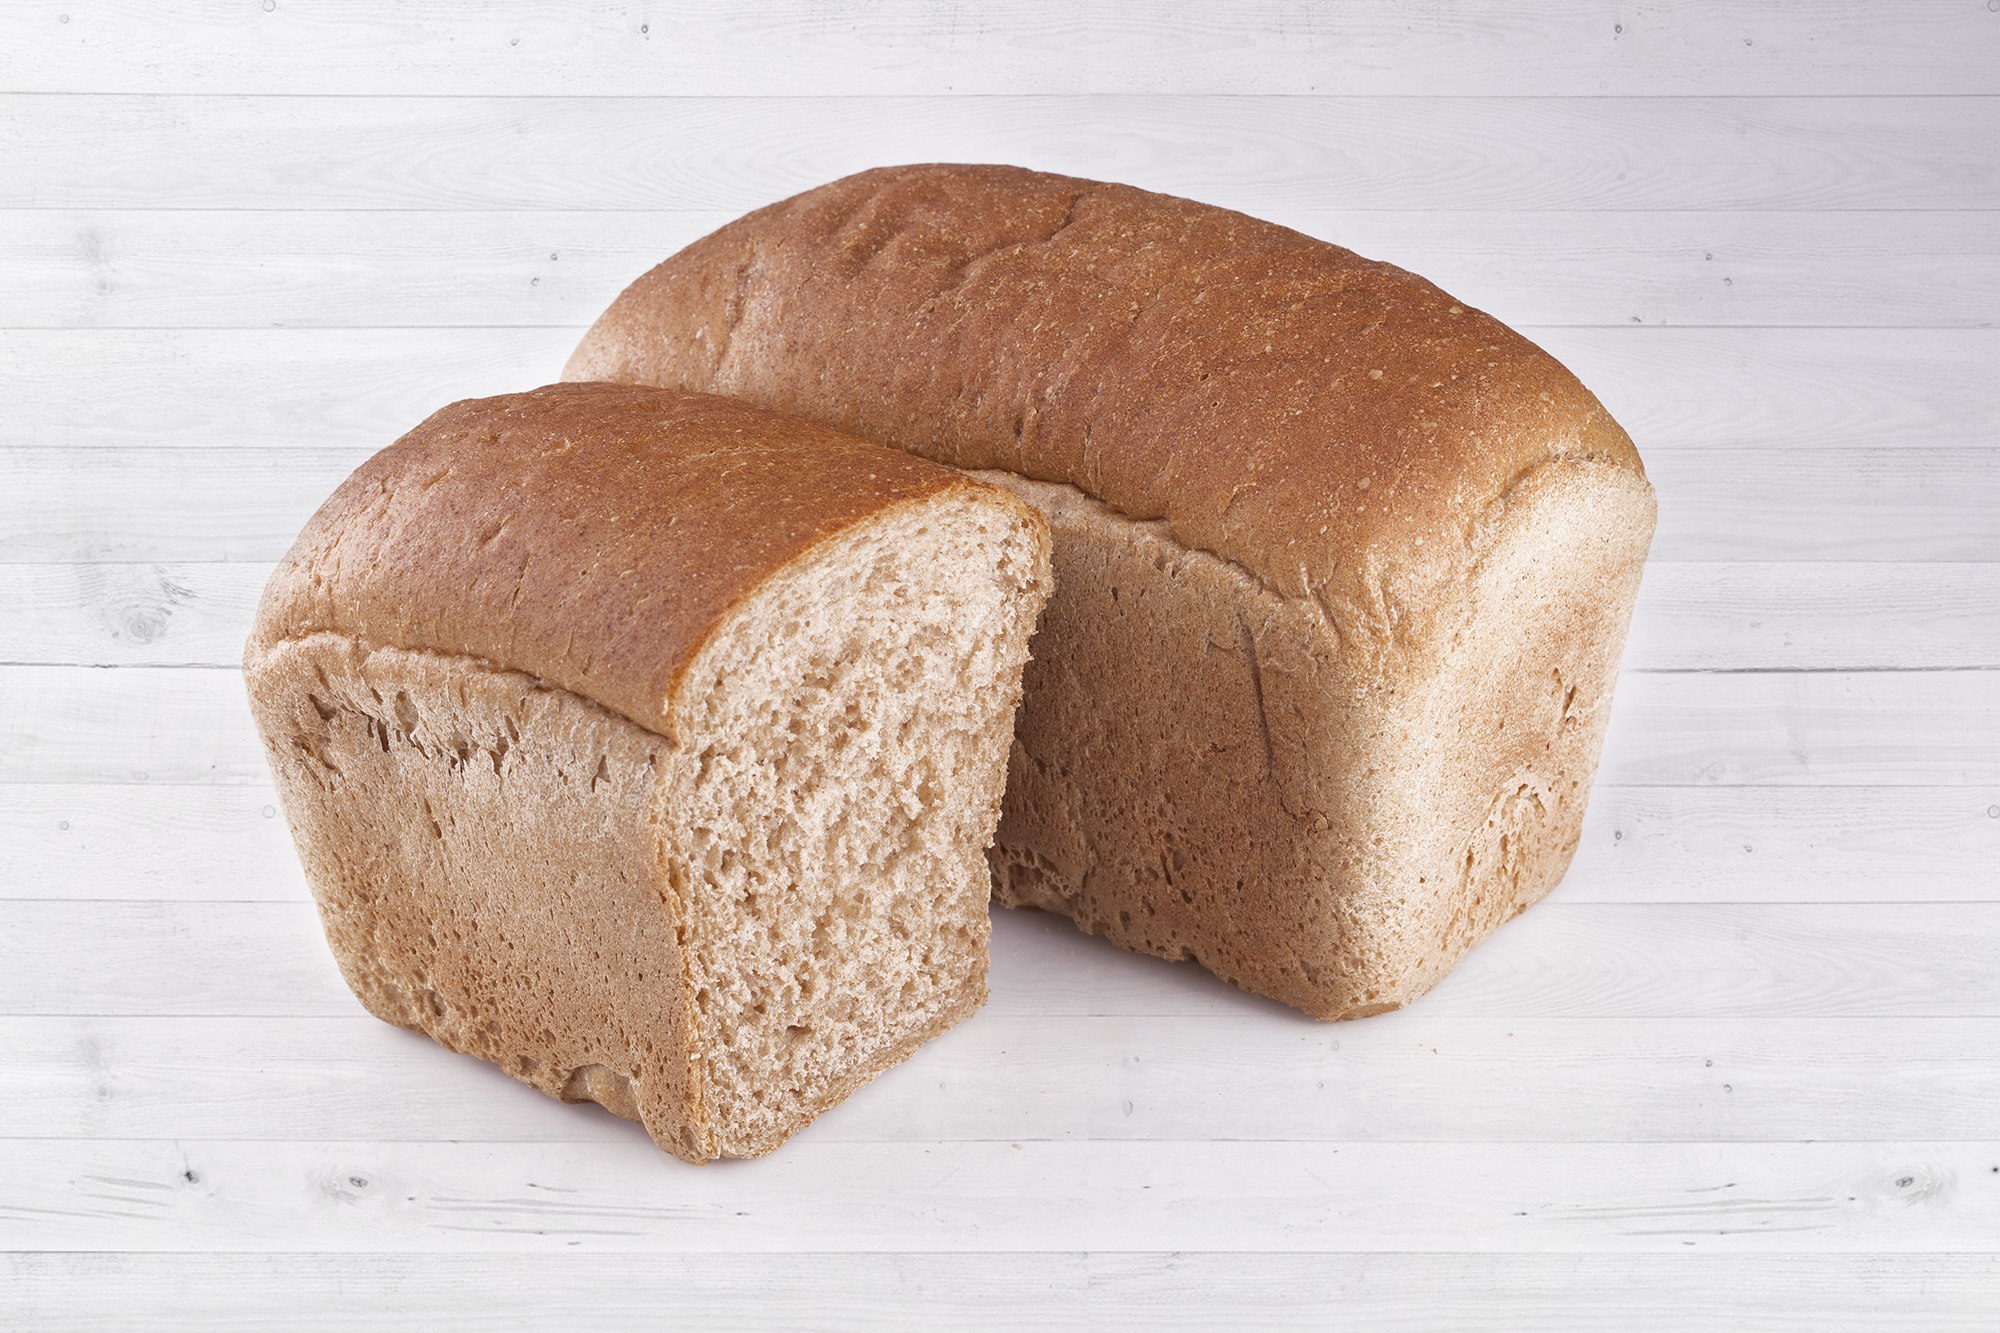 Пшеничный хлеб в форме. Хлеб пшеничный формовой 600г /Сенеж хлеб/. 200г хлеб пшеничный Сдобнофф. Формовой хлеб сбоку. Хлеб ржано пшеничный хлебный дом.